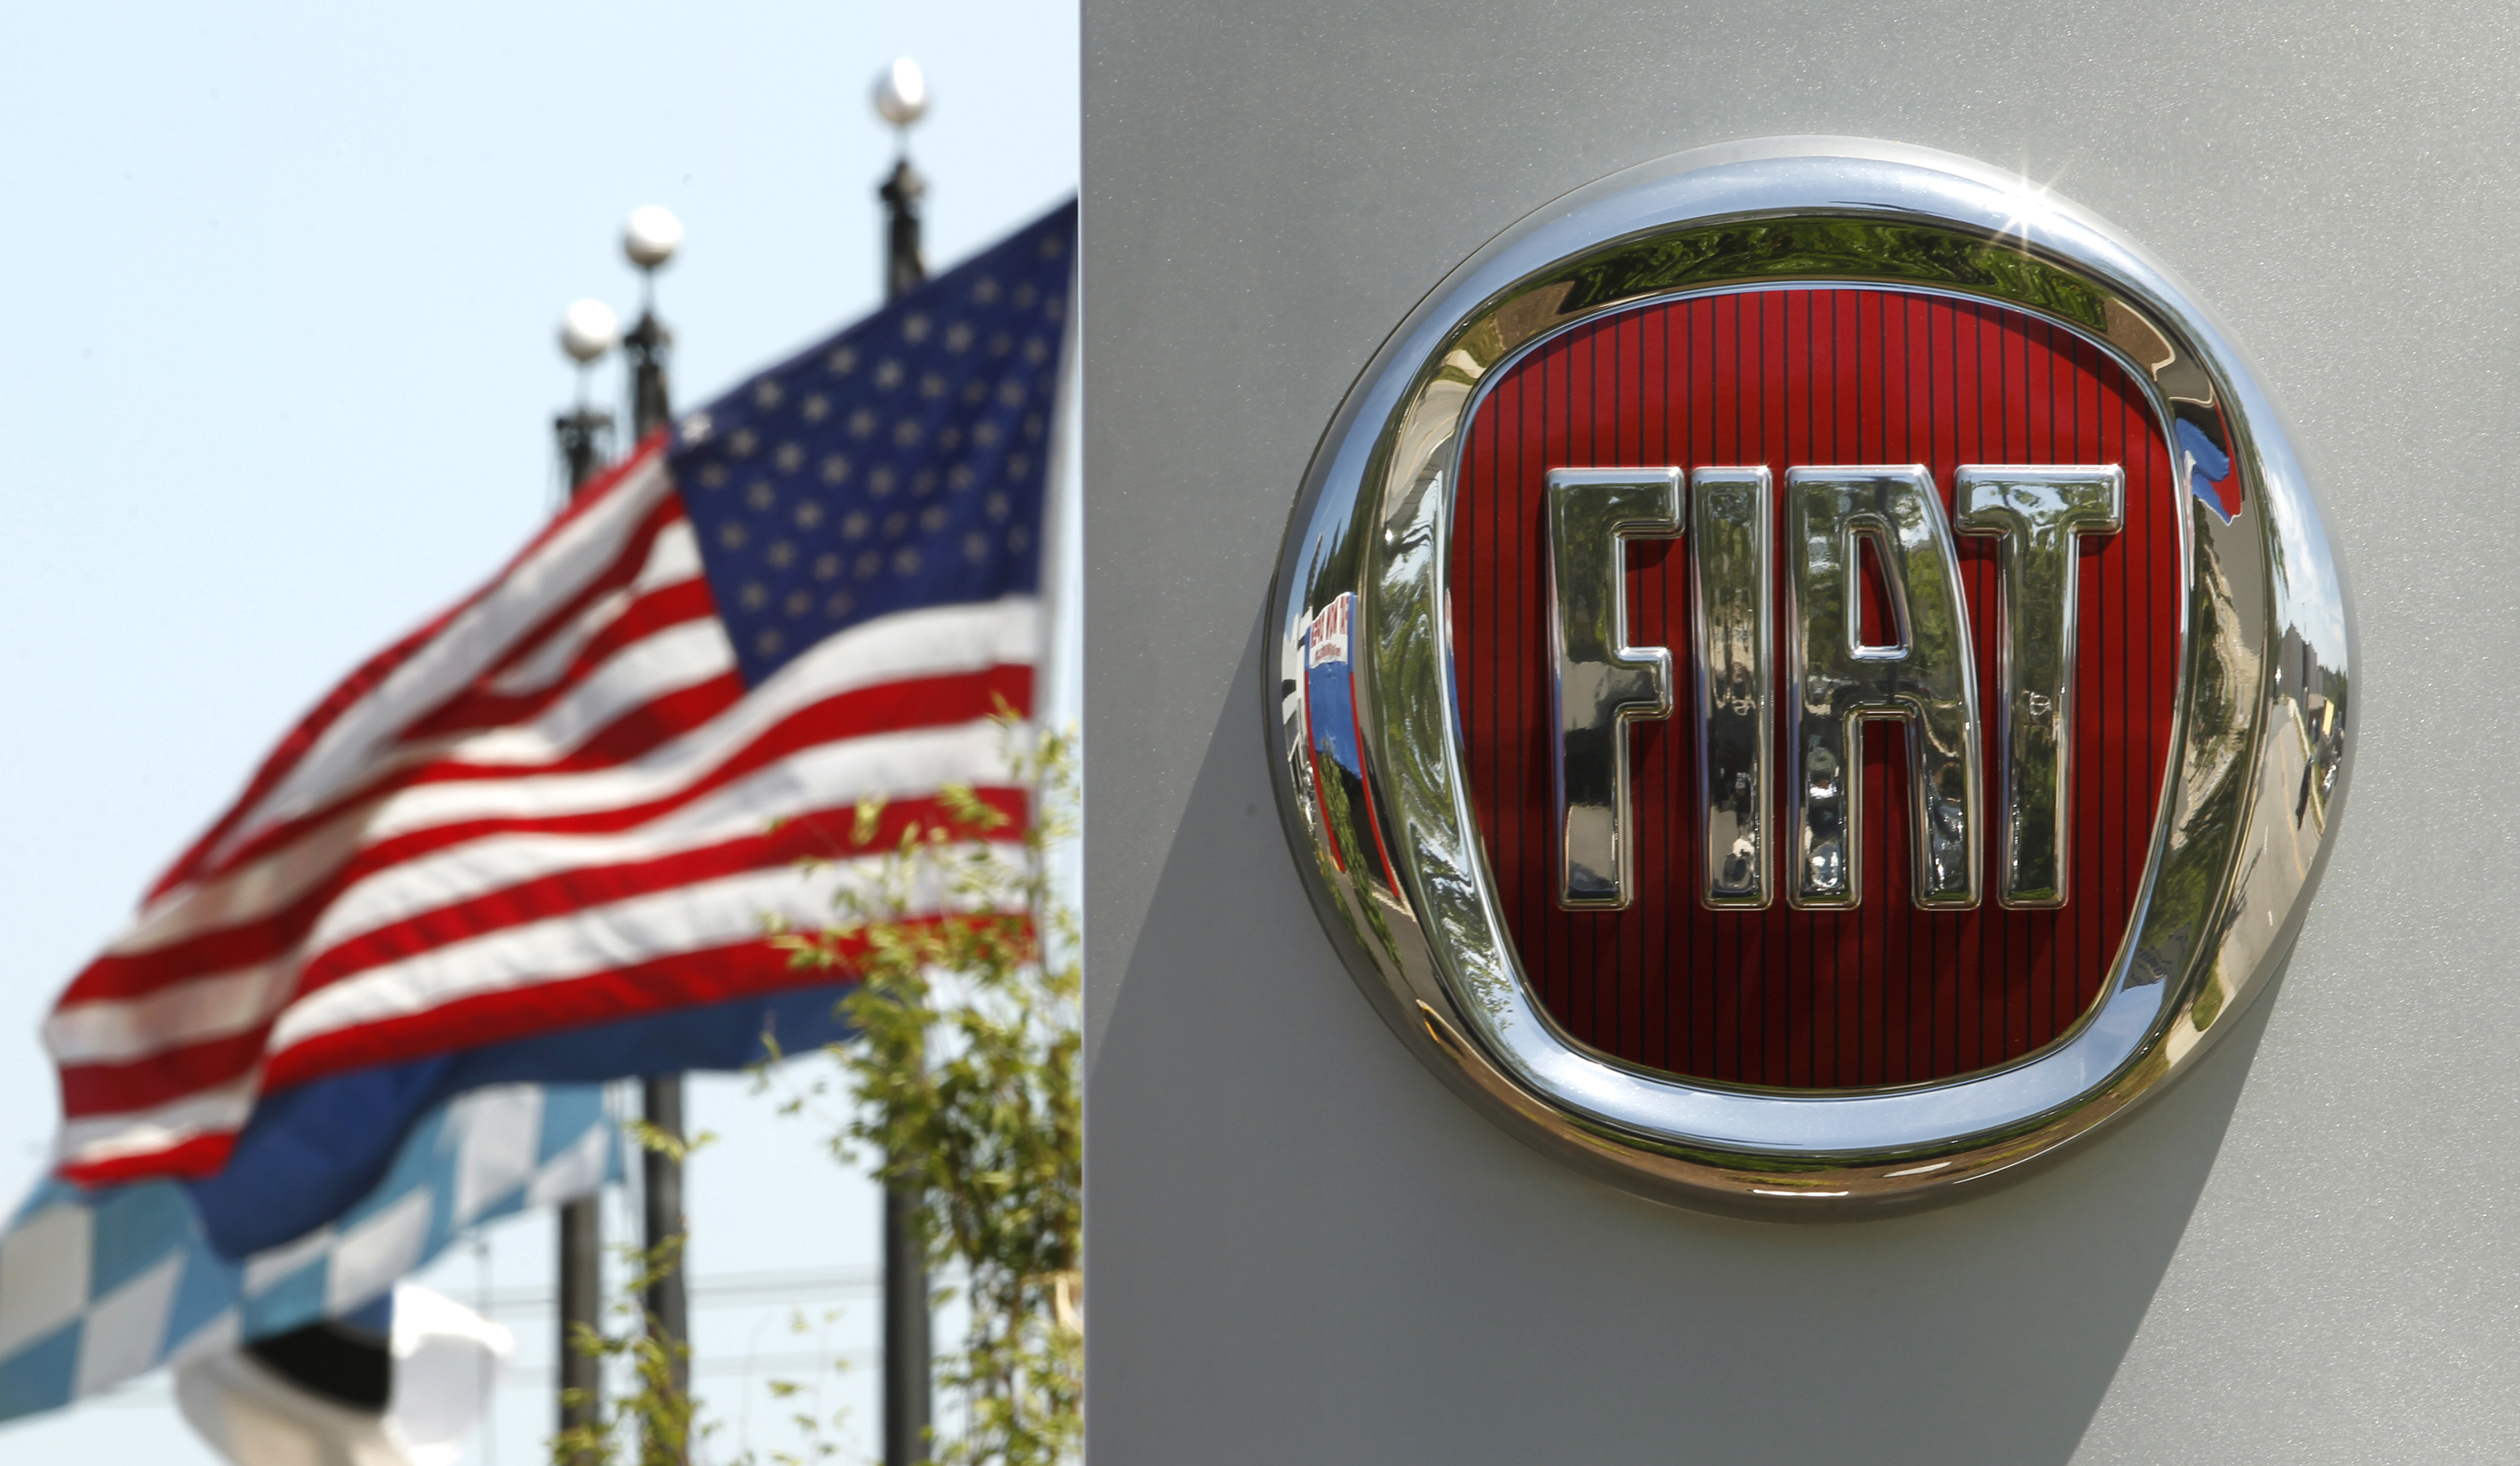  Fiat también ‘truqueó’ sus carros para engañar pruebas de emisiones